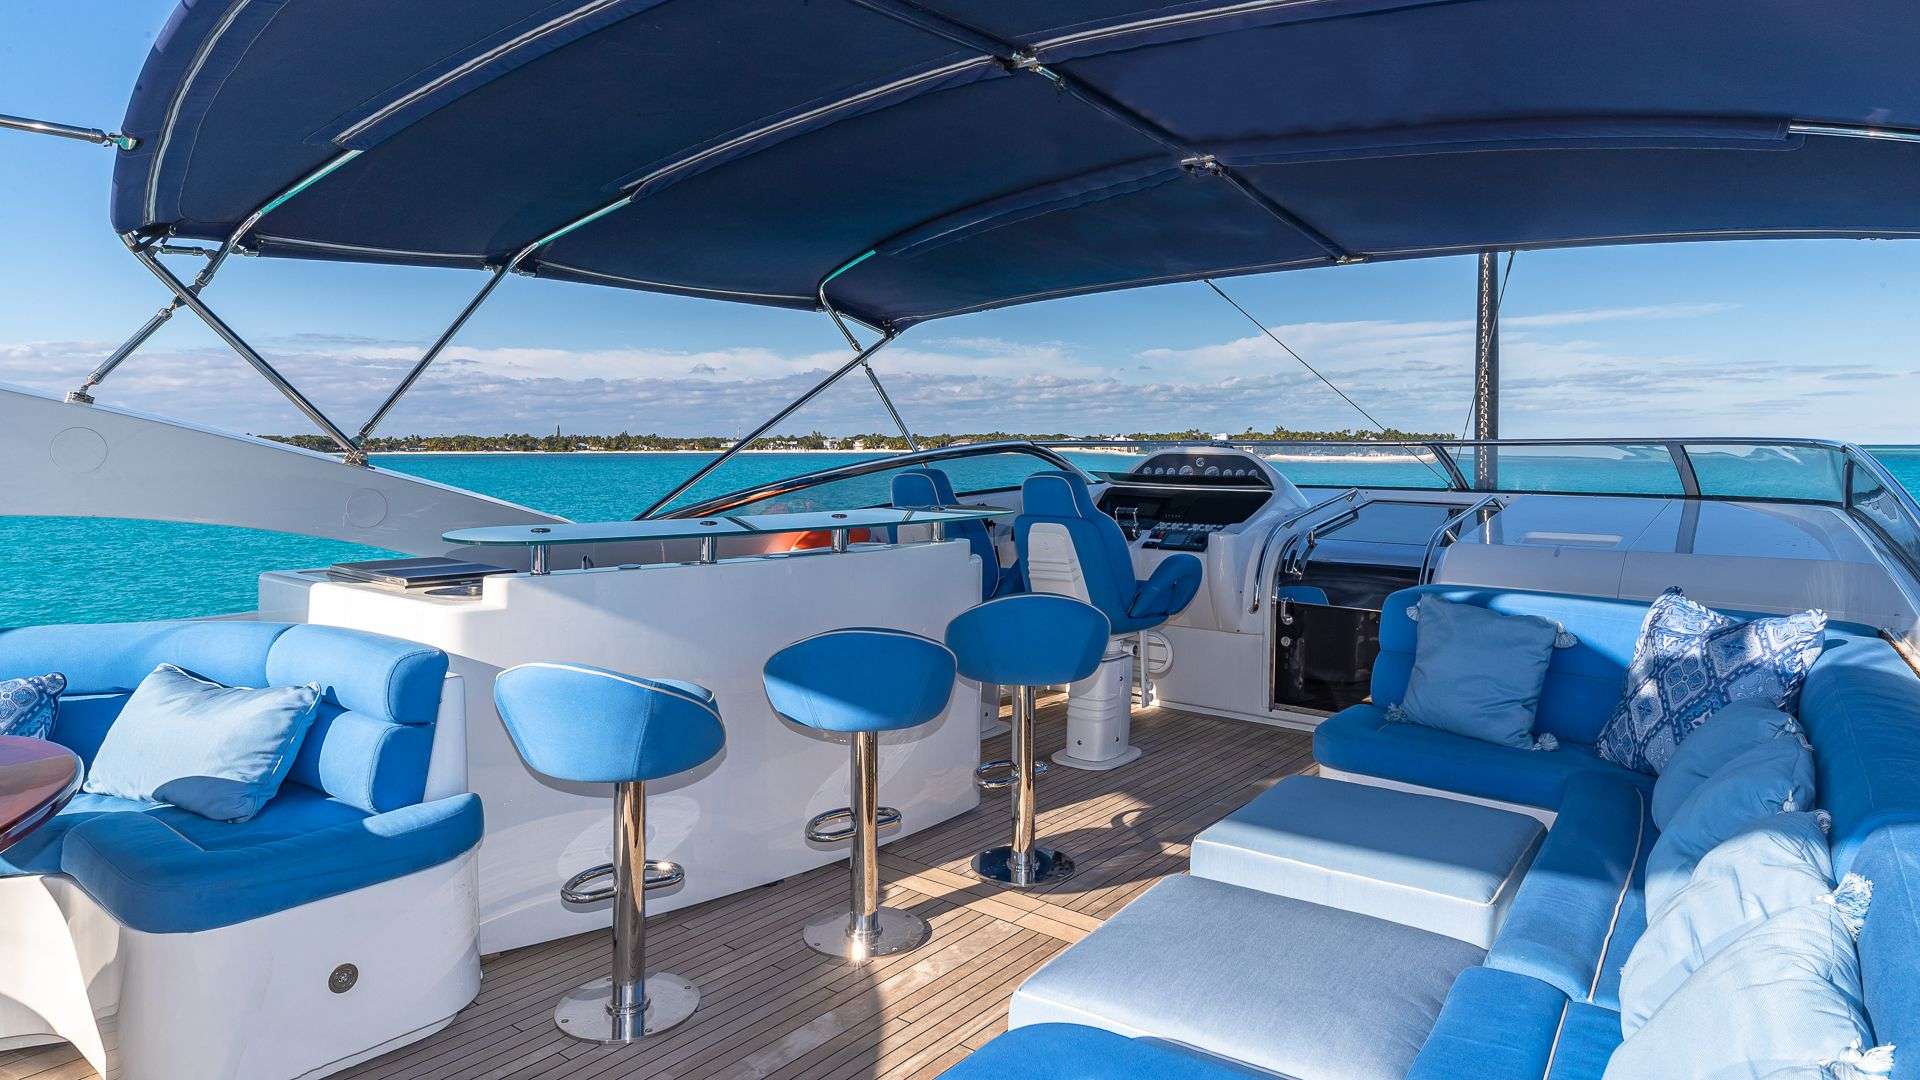 KEFI Yacht Charter - Top deck